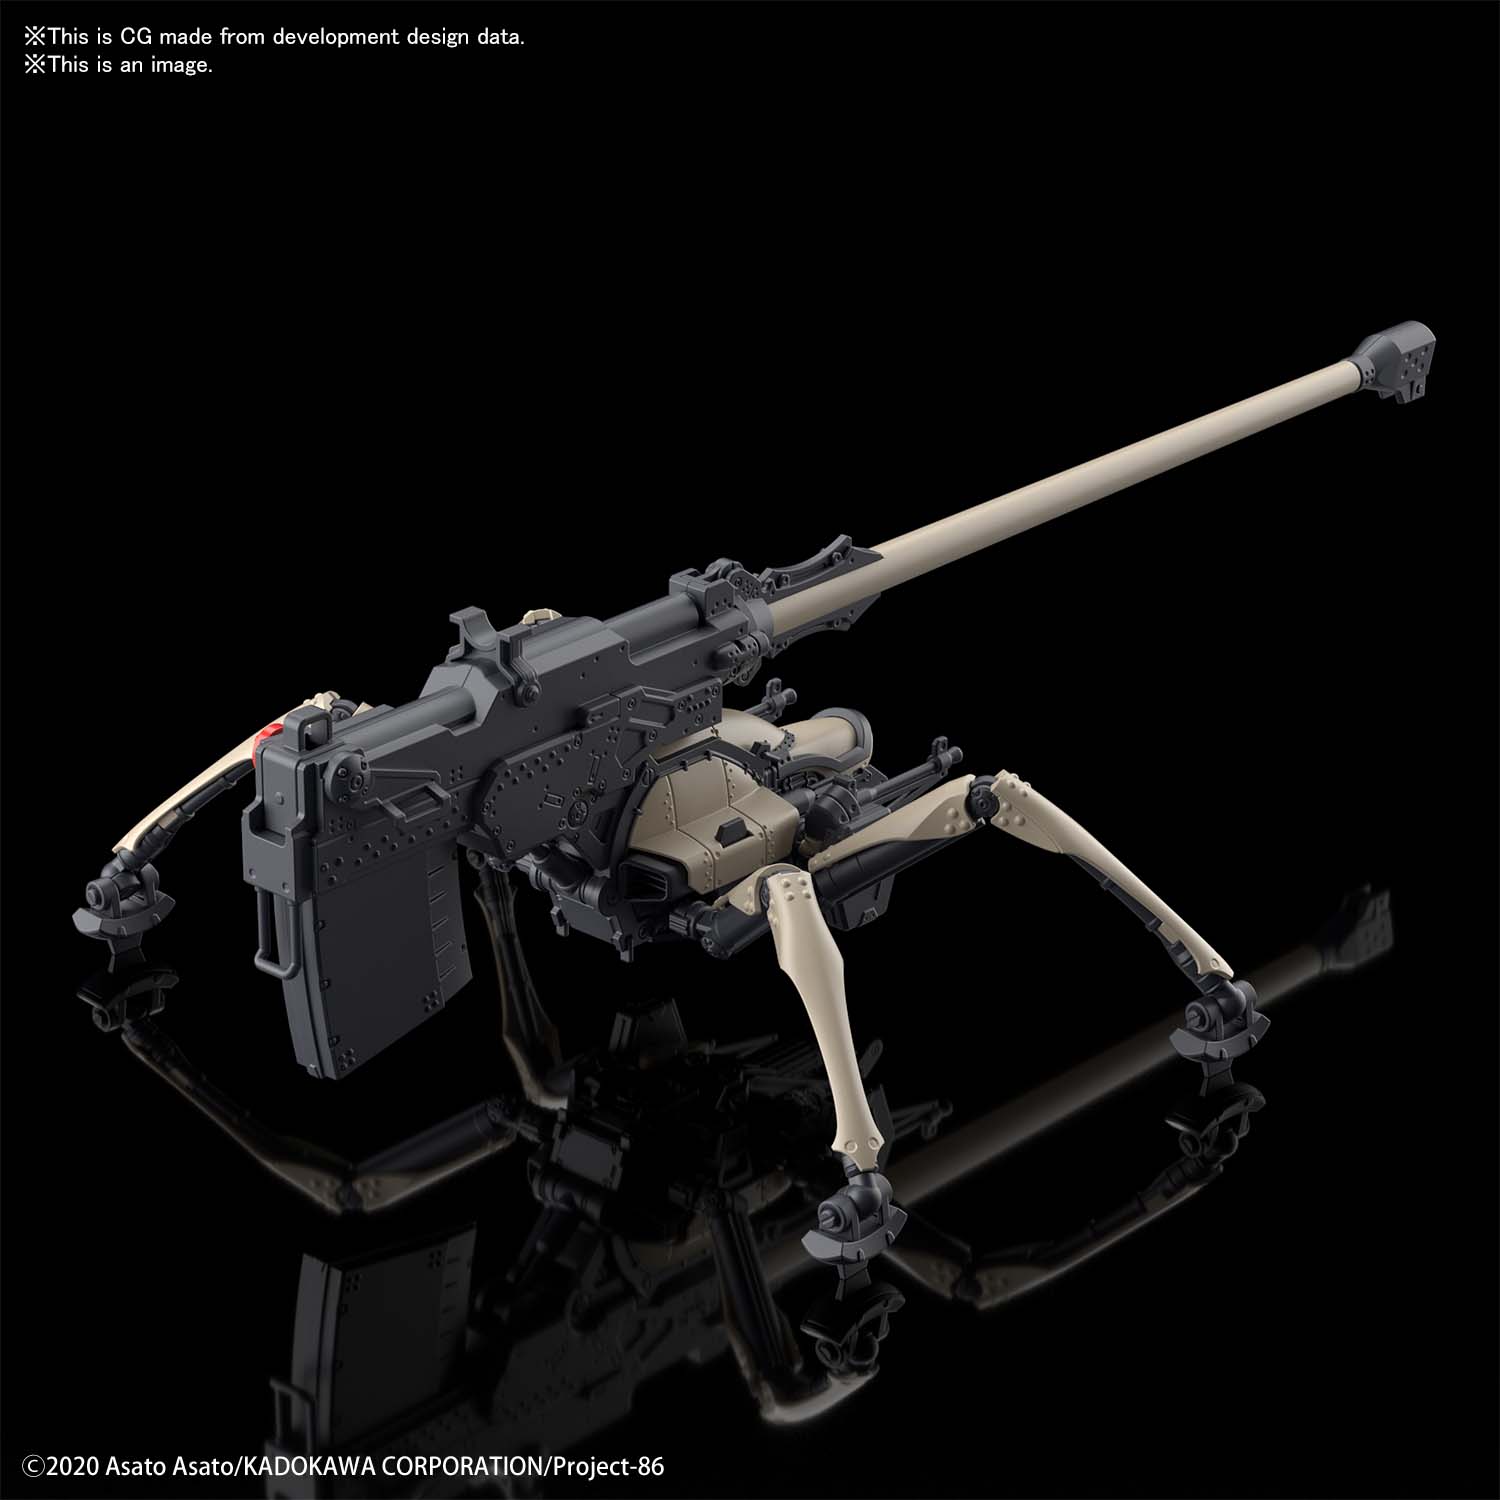 hg-juggernaut_long_range_cannon-o2